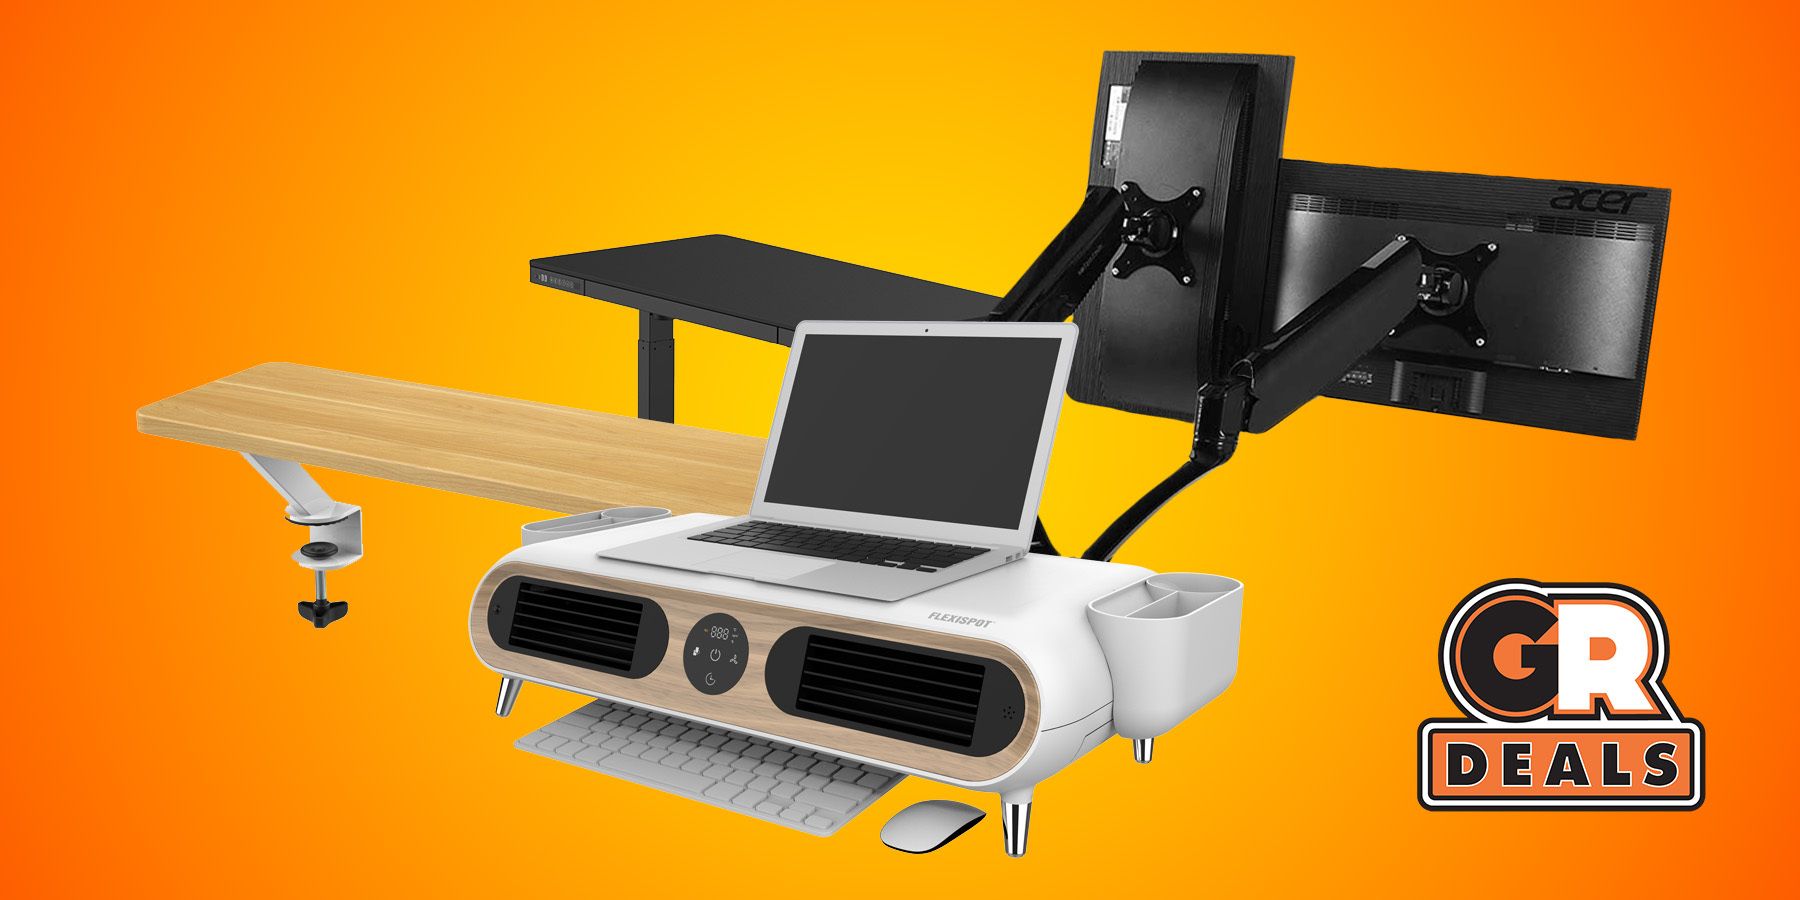 FlexiSpot HK01 Hammock Under Desk For Office Napping